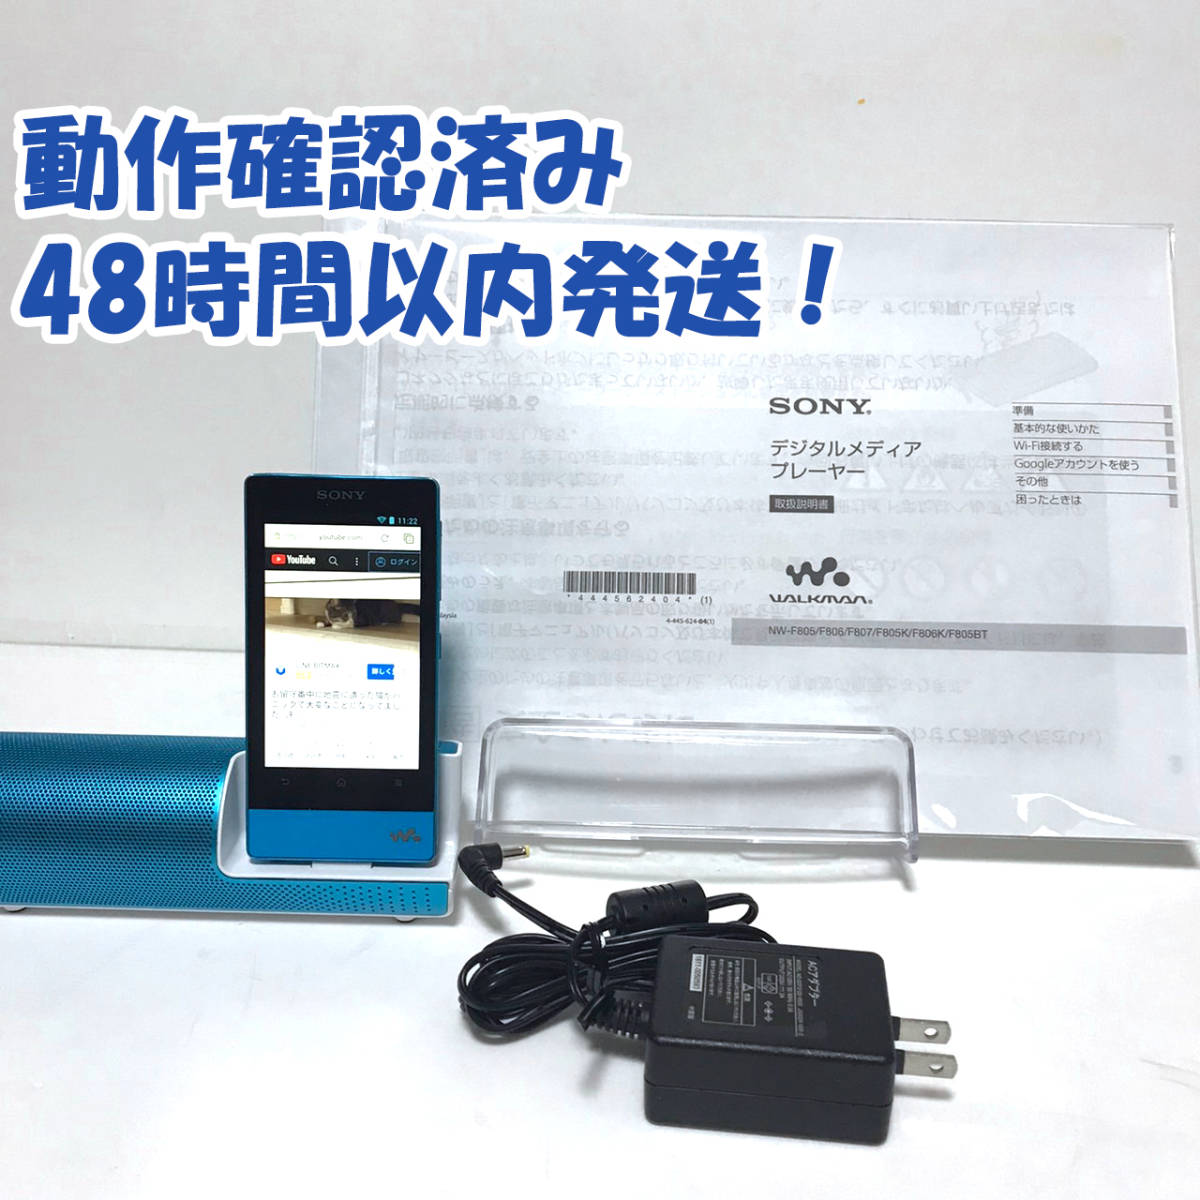 SONY ウォークマン Fシリーズ 16GB スピーカー付 NW-F805 avaja.org